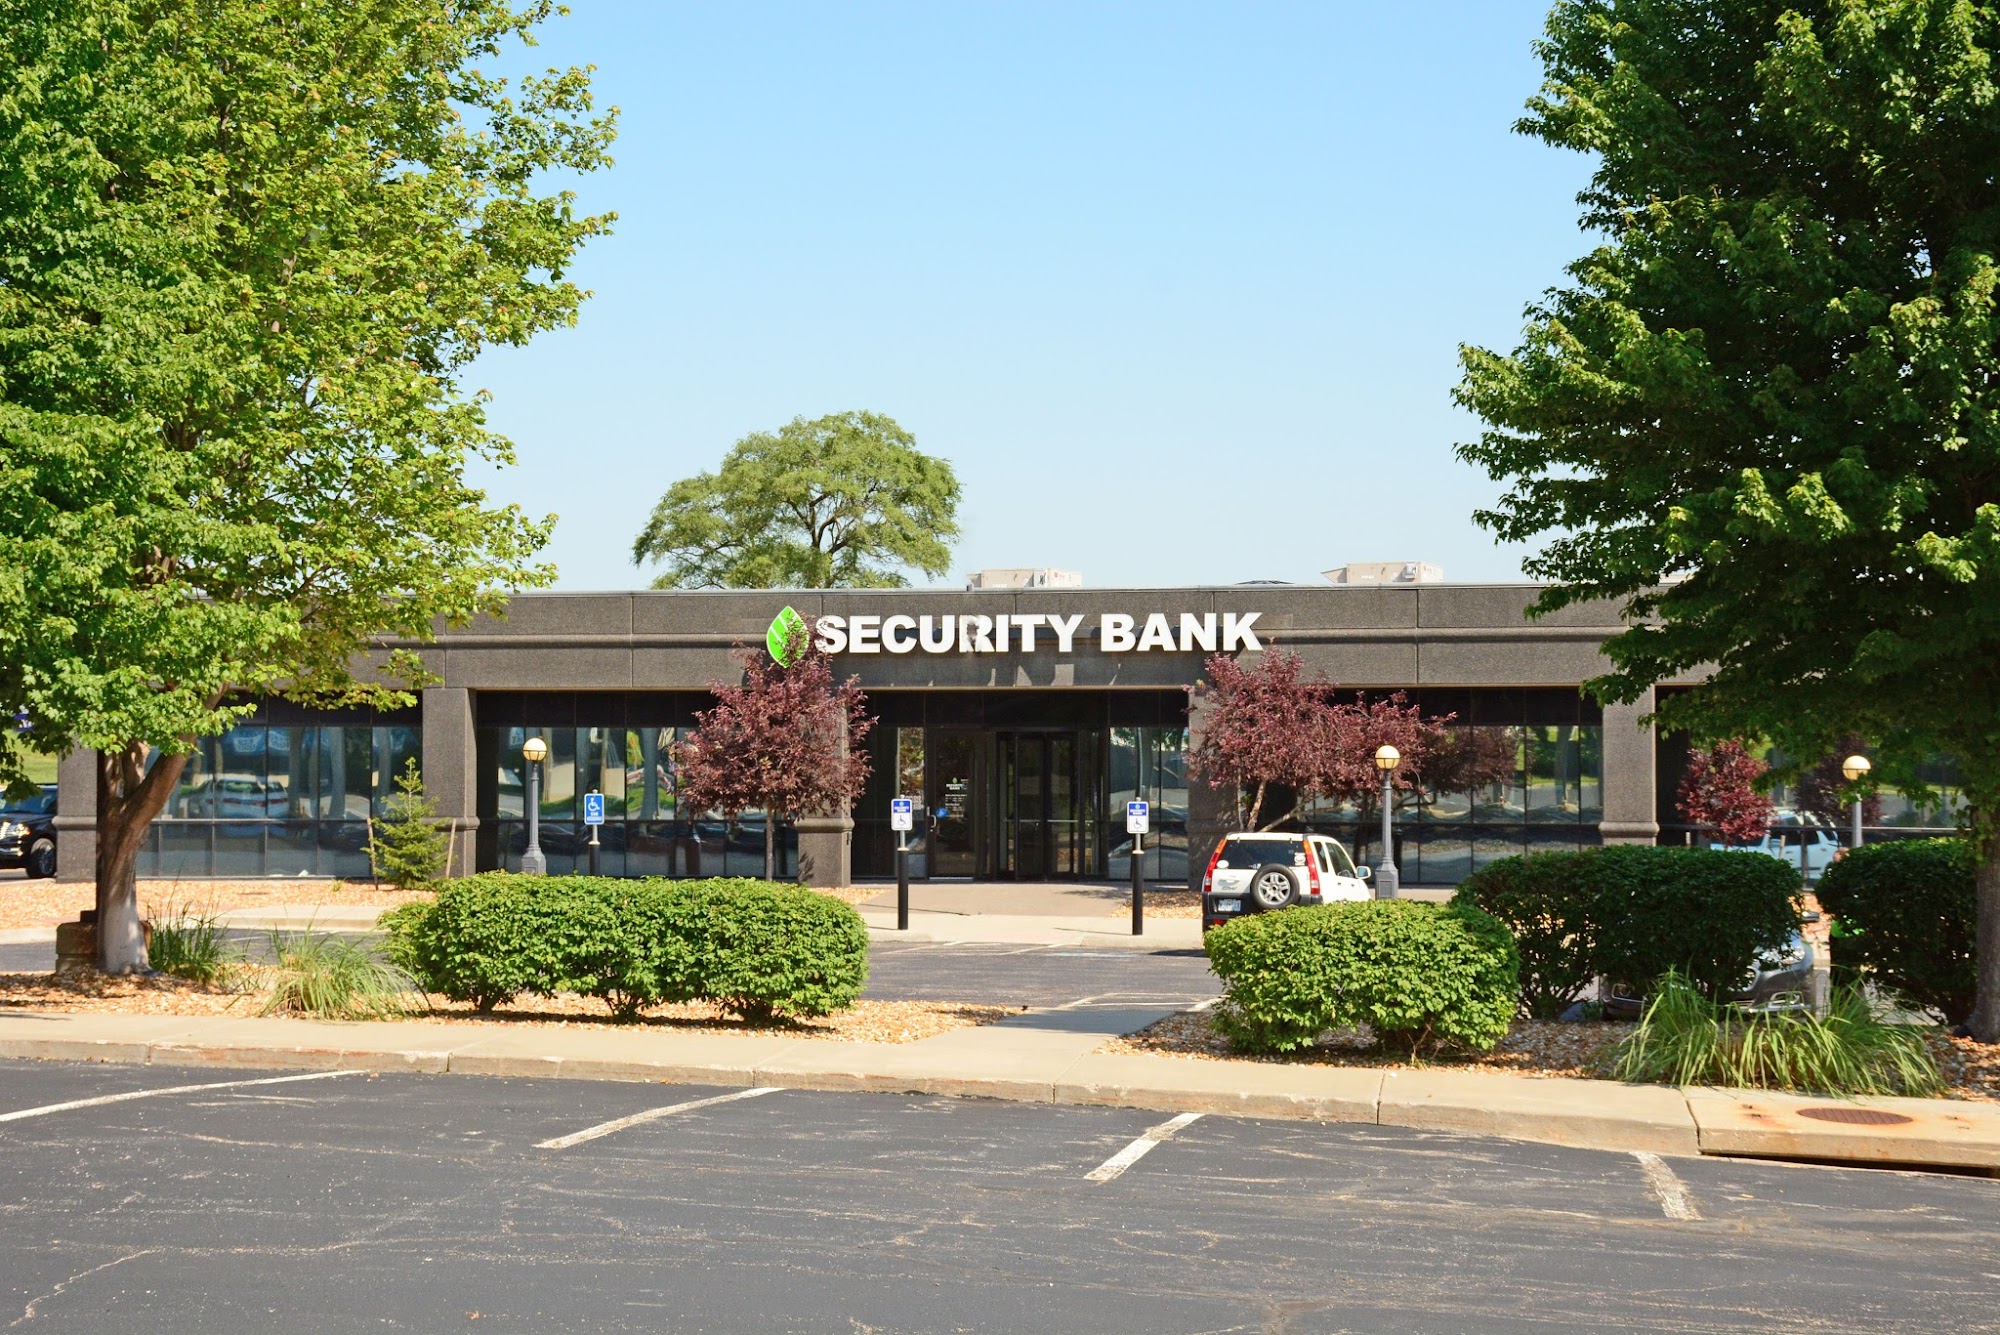 Security Bank of Kansas City